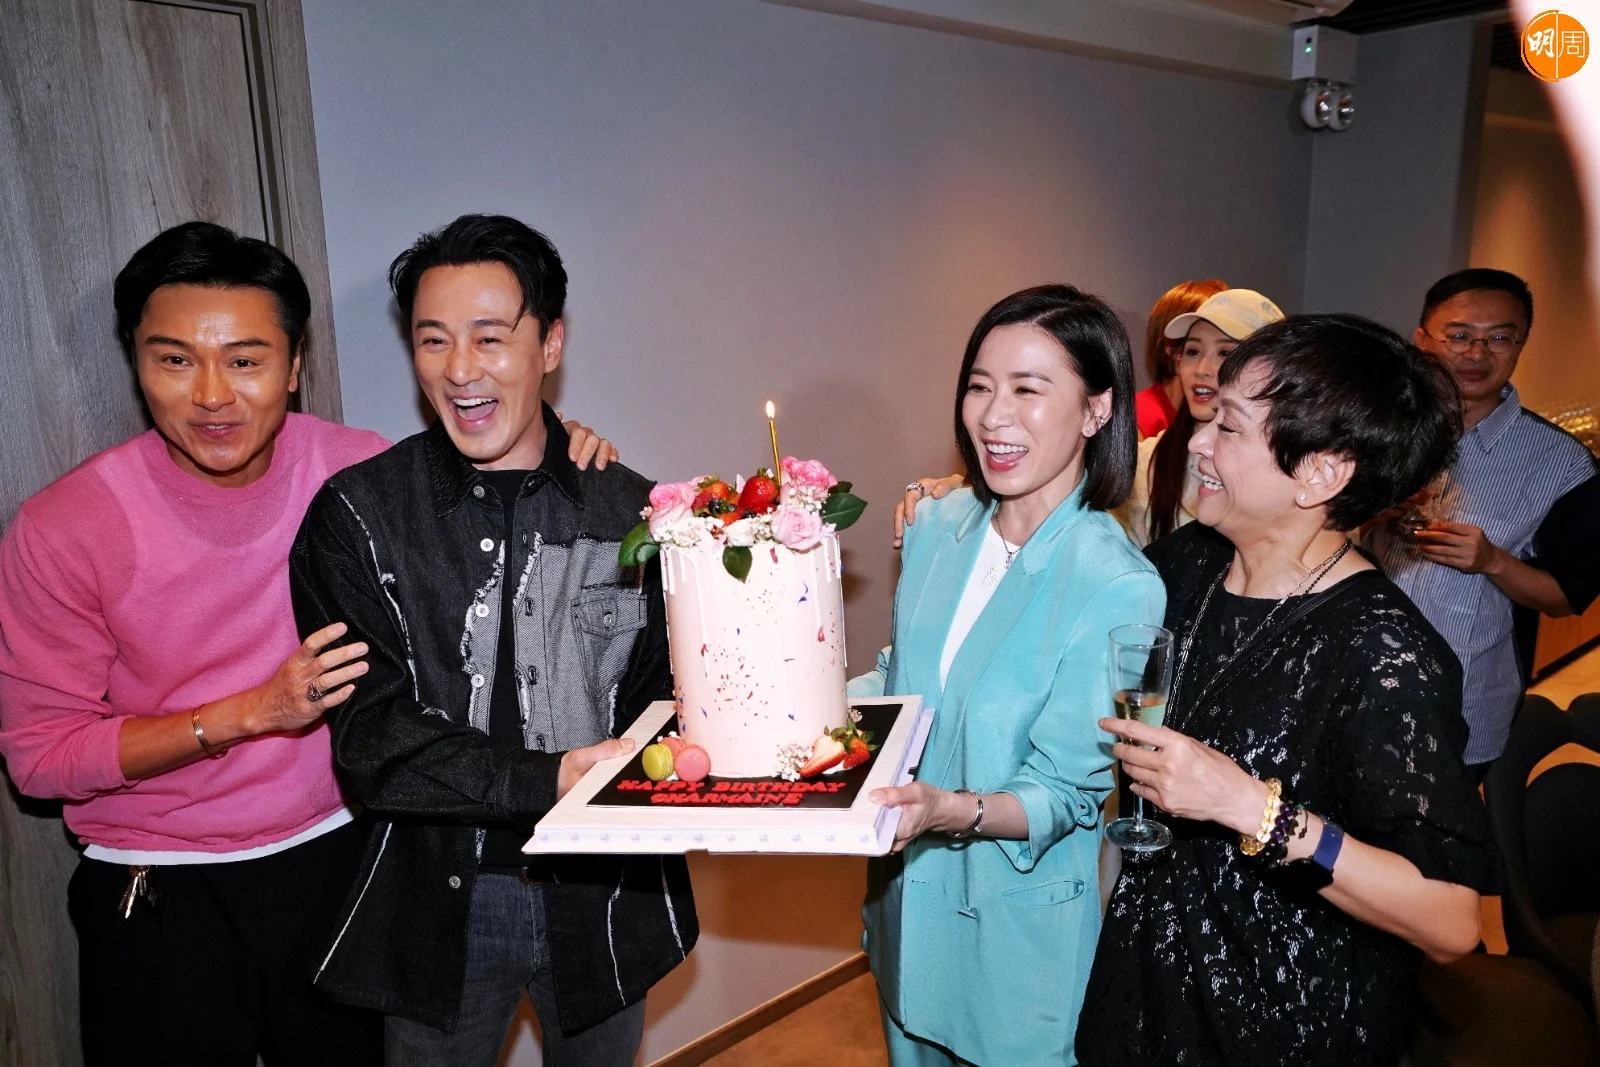 林峯捧着粉紅色大蛋糕到場給壽星女佘詩曼送驚喜。